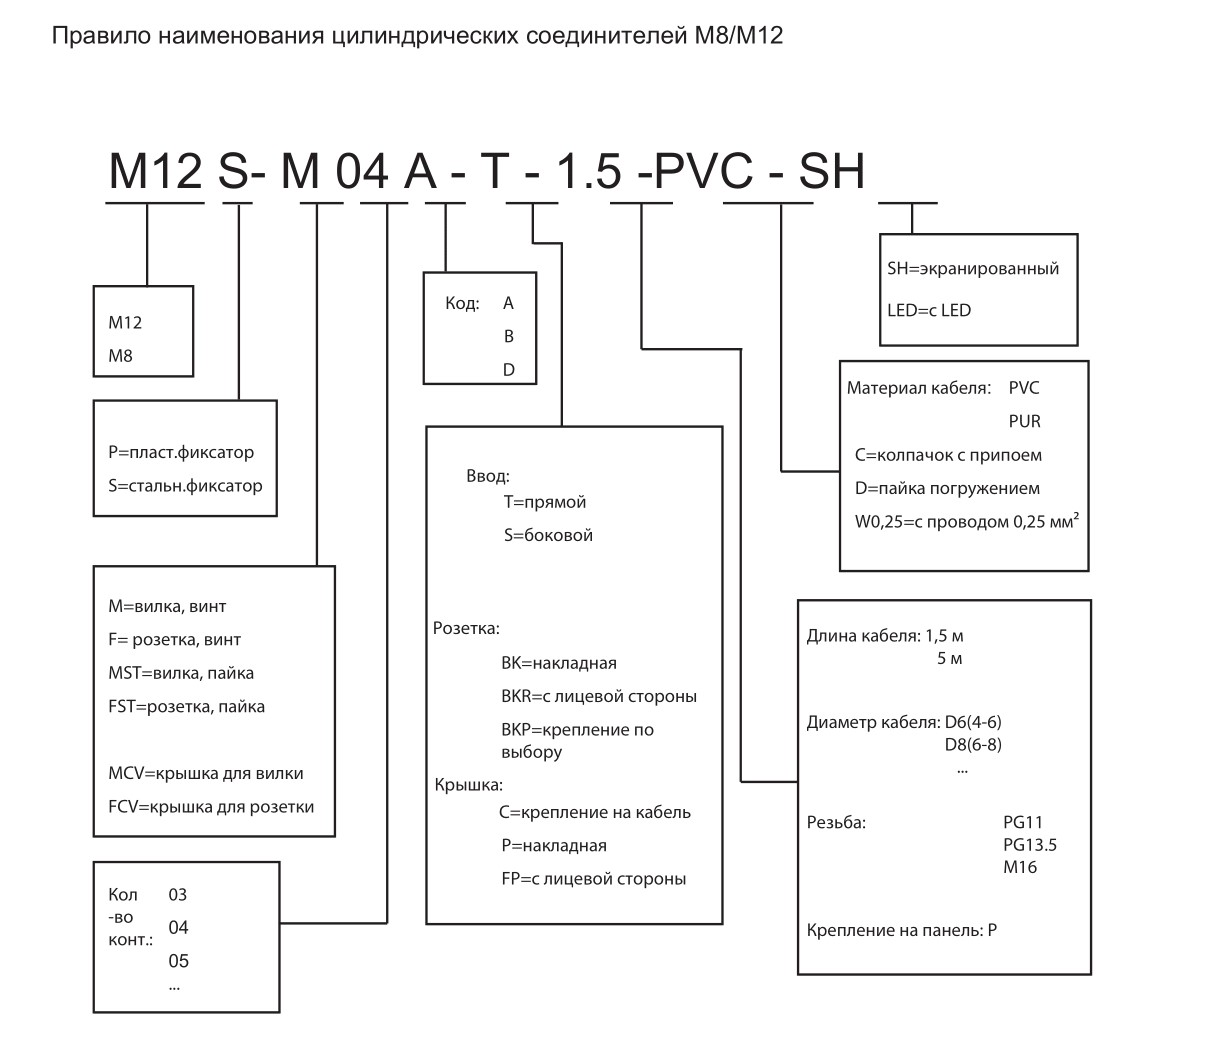 Цилиндрический соединитель-розетка M12-F03A-T-D6-SH 1630034212001: Структура обозначения